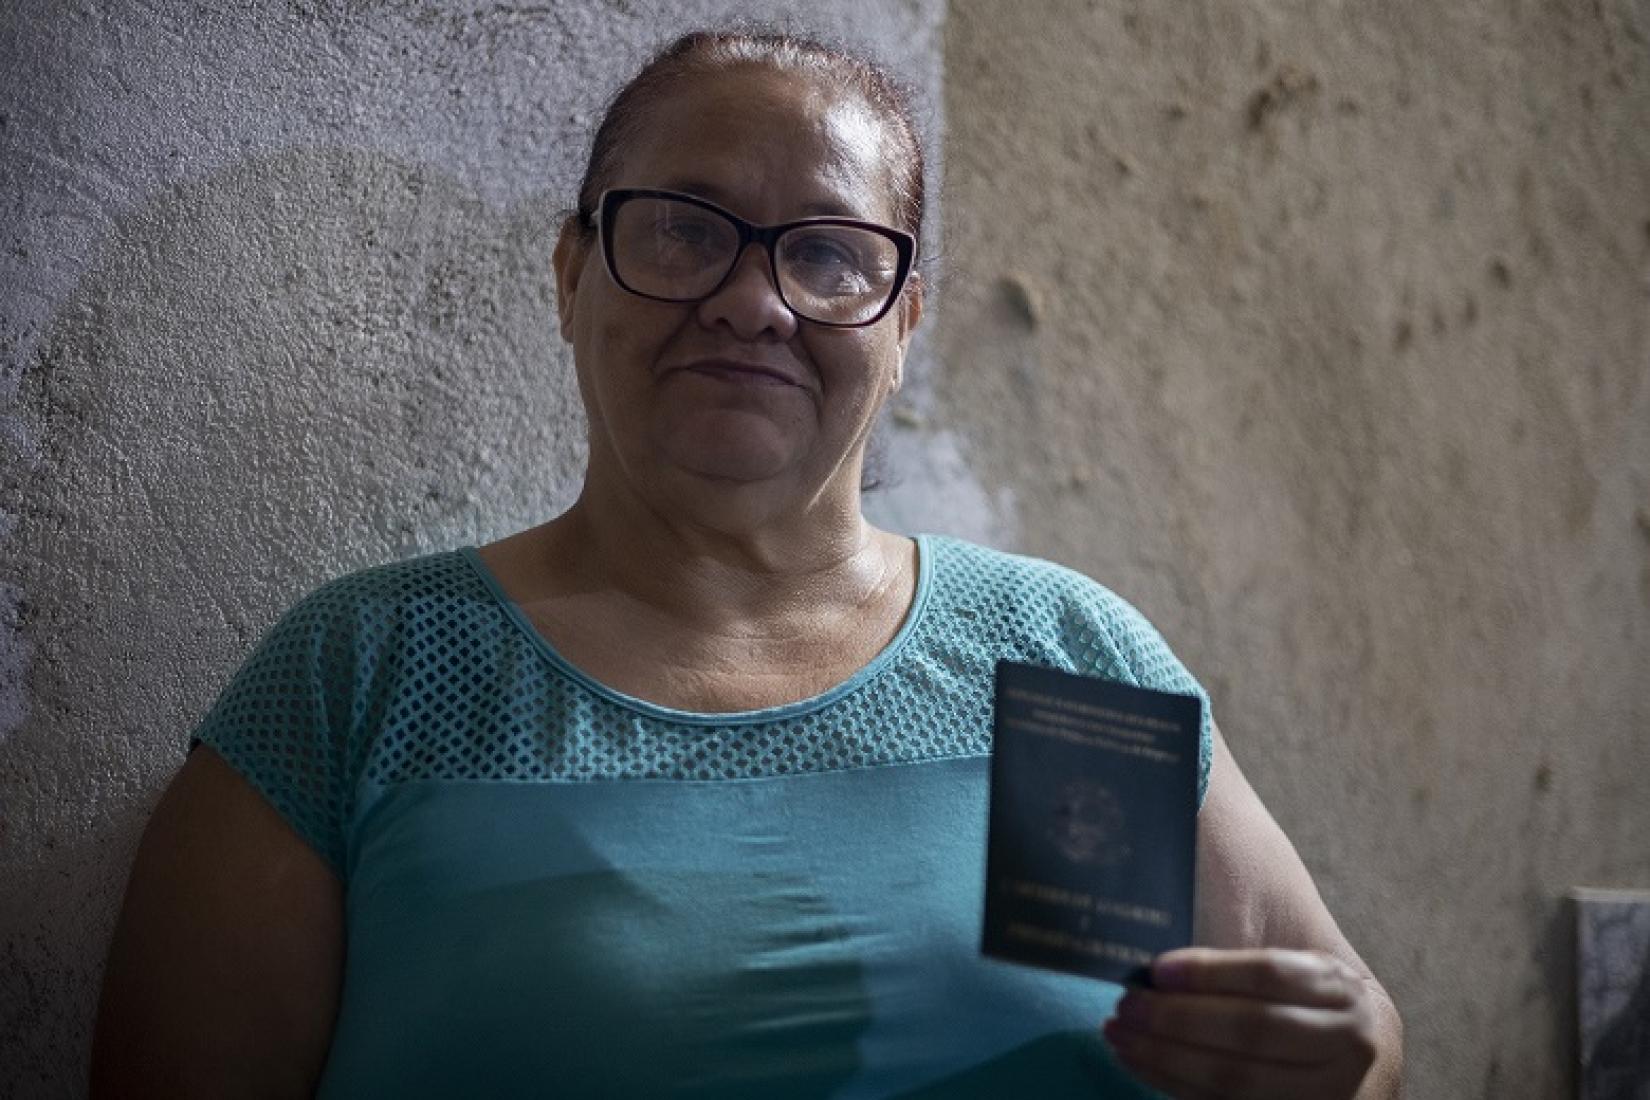 Depois de viver em situação de rua com o filho pequeno, a venezuelana Rosa conseguiu ser interiorizada para o Rio de Janeiro (RJ) e hoje trabalha com carteira assinada.